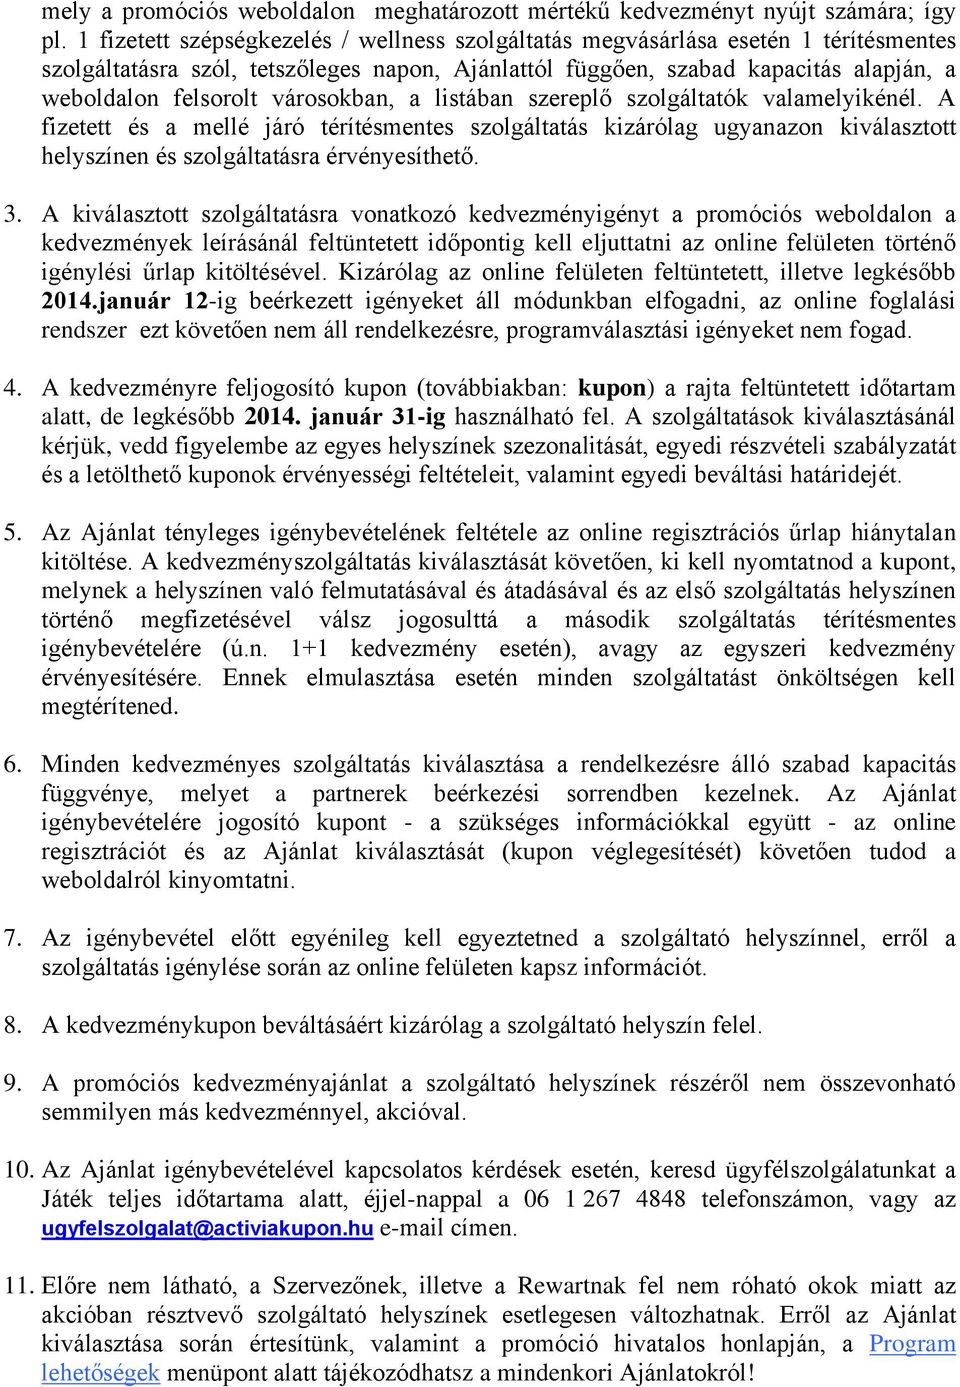 Activia Kupon Promóció Játékszabályzat - PDF Free Download